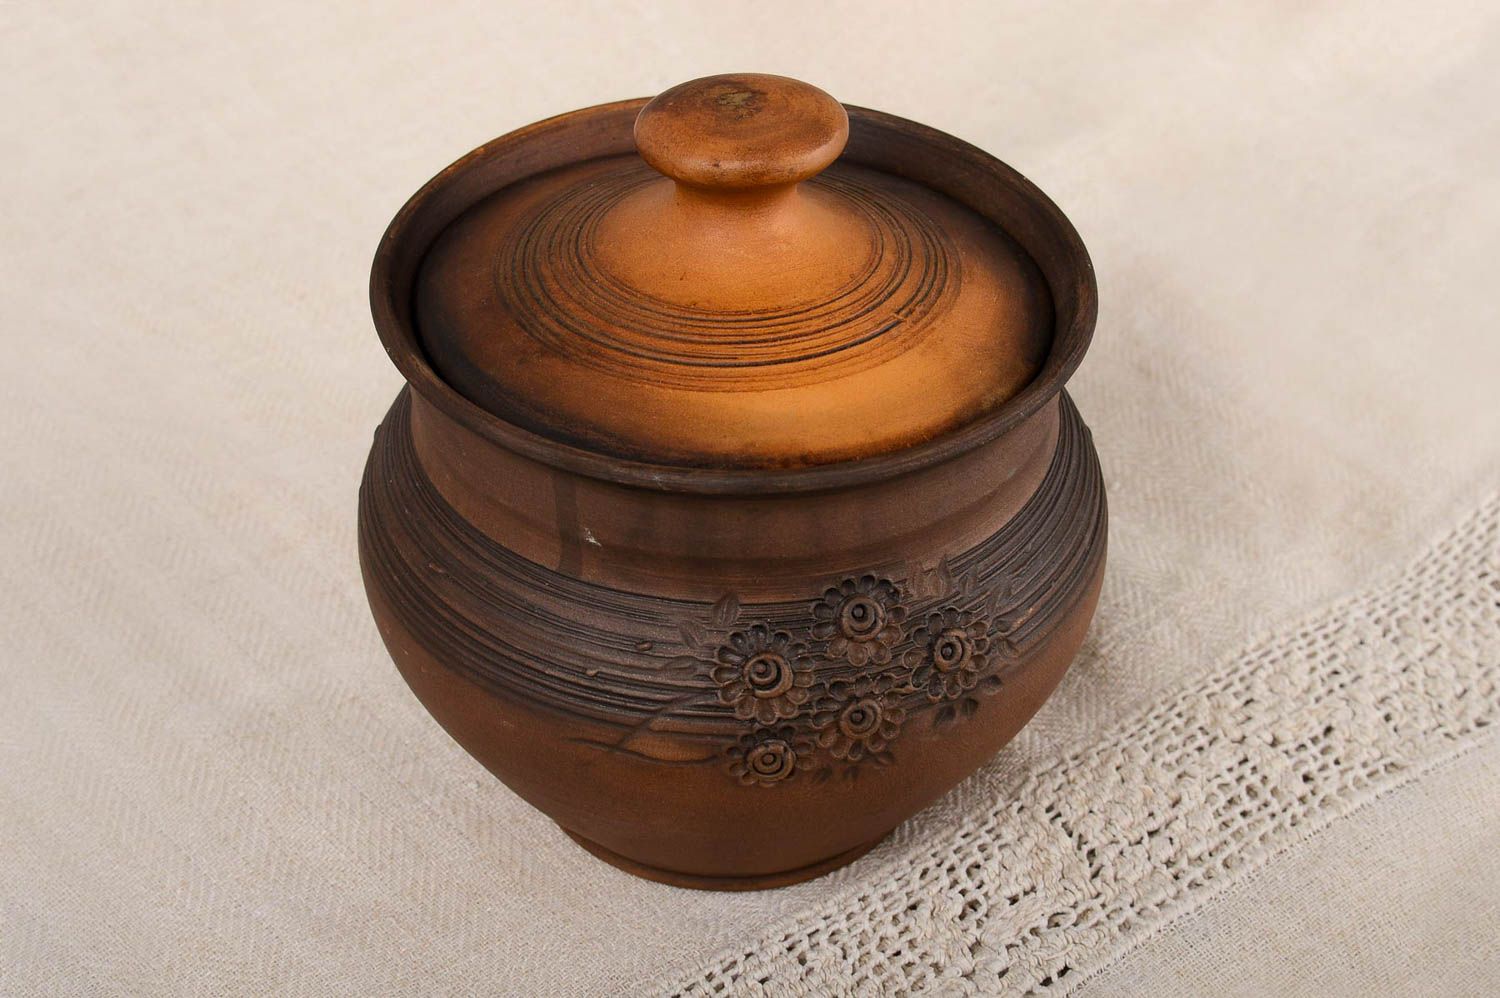 Topf aus Ton handgefertigt Deko für Küche Keramik Geschirr in Braun schön foto 1